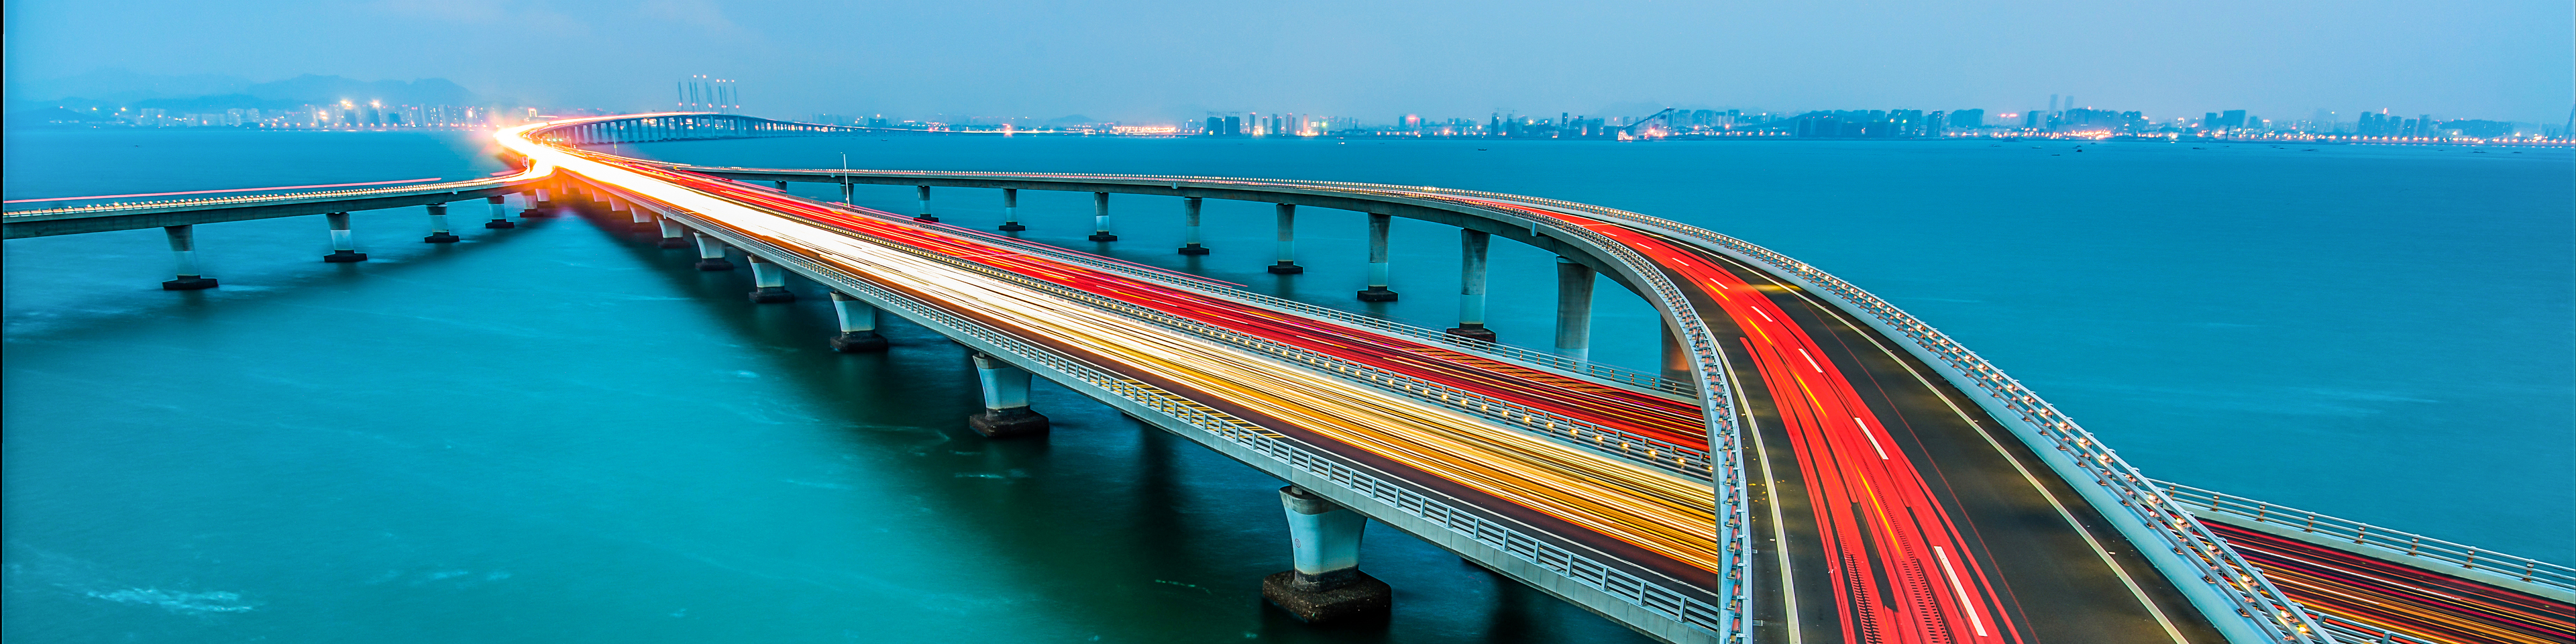 Jiaozhou Bay Bridge of Qingdao,Shandong Province,China,